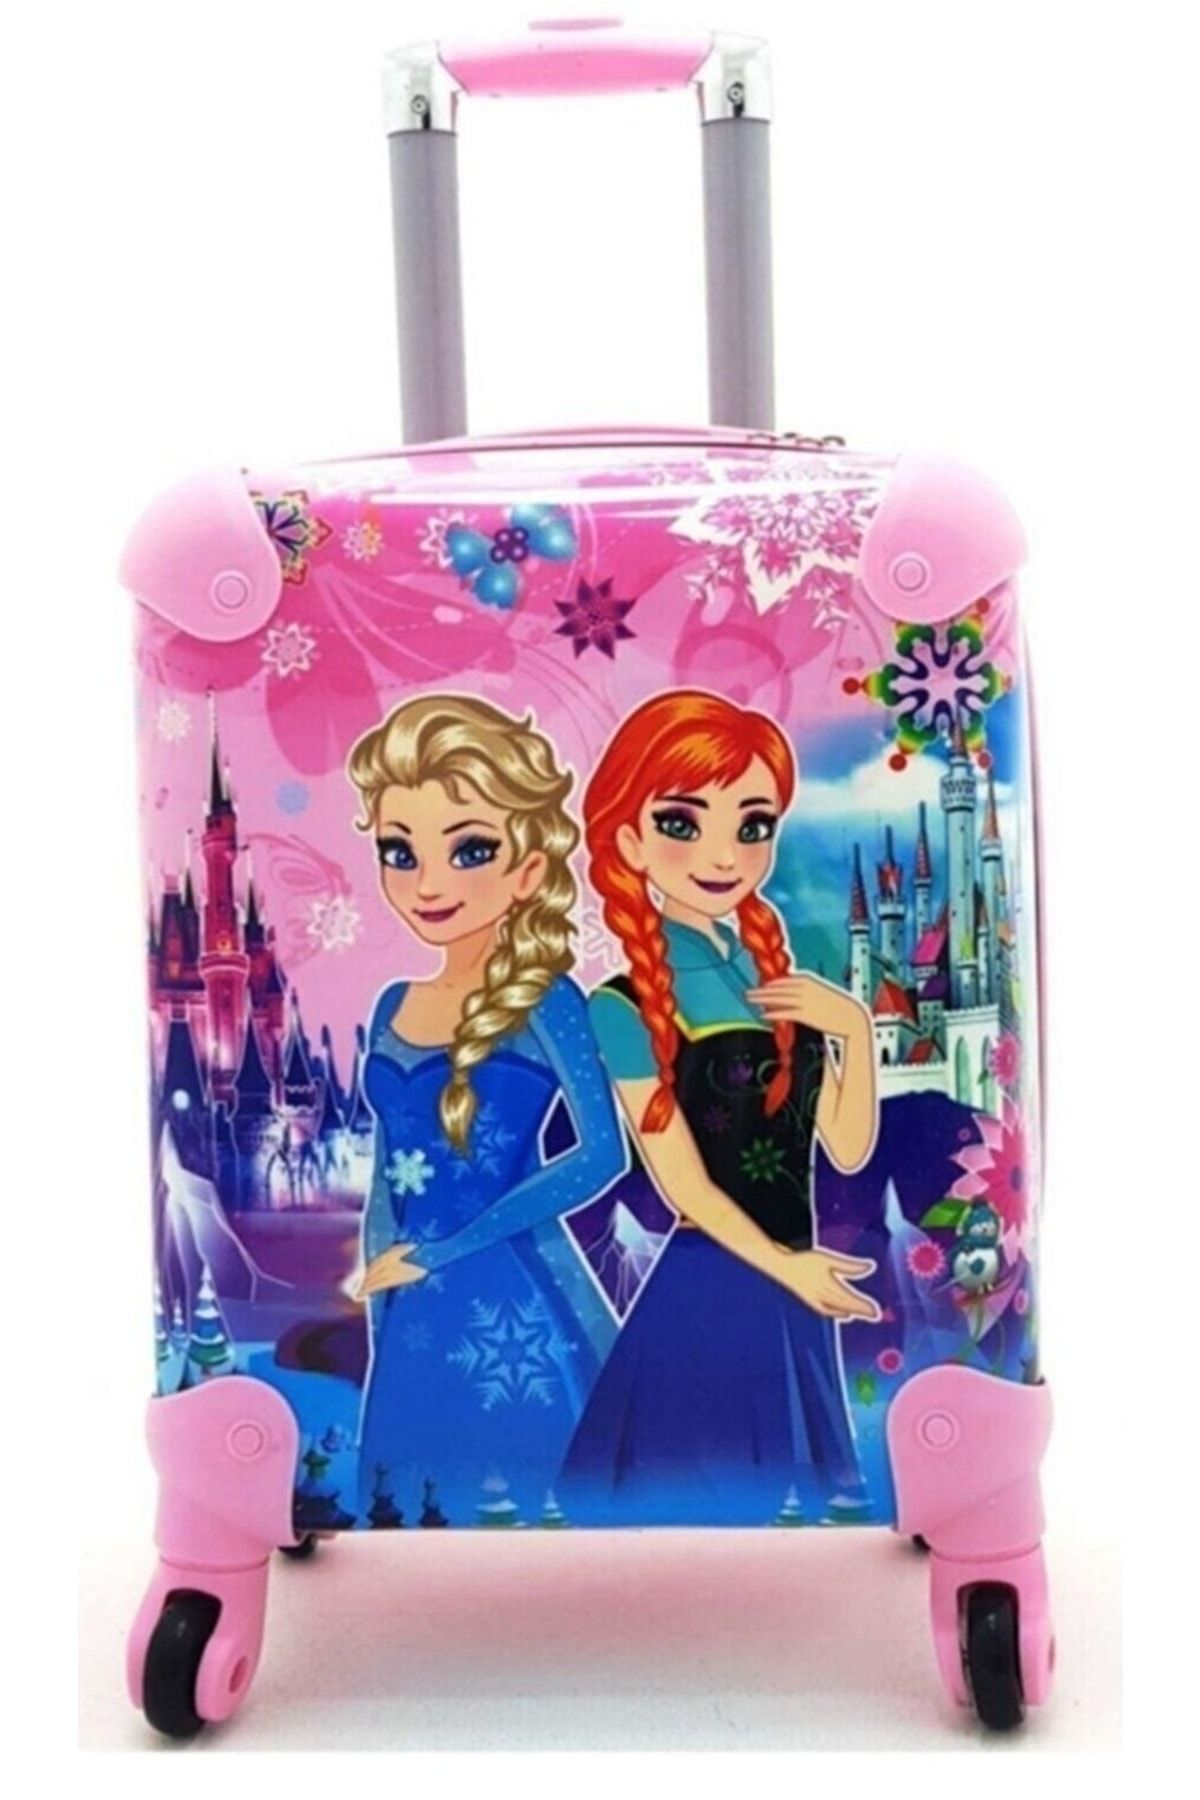 QUEEN AKSESUAR Elsa Anna Karlar Ülkesi Frozen Desenli Çocuk Valizi Çekçek Tekerlekli Pembe Bavul